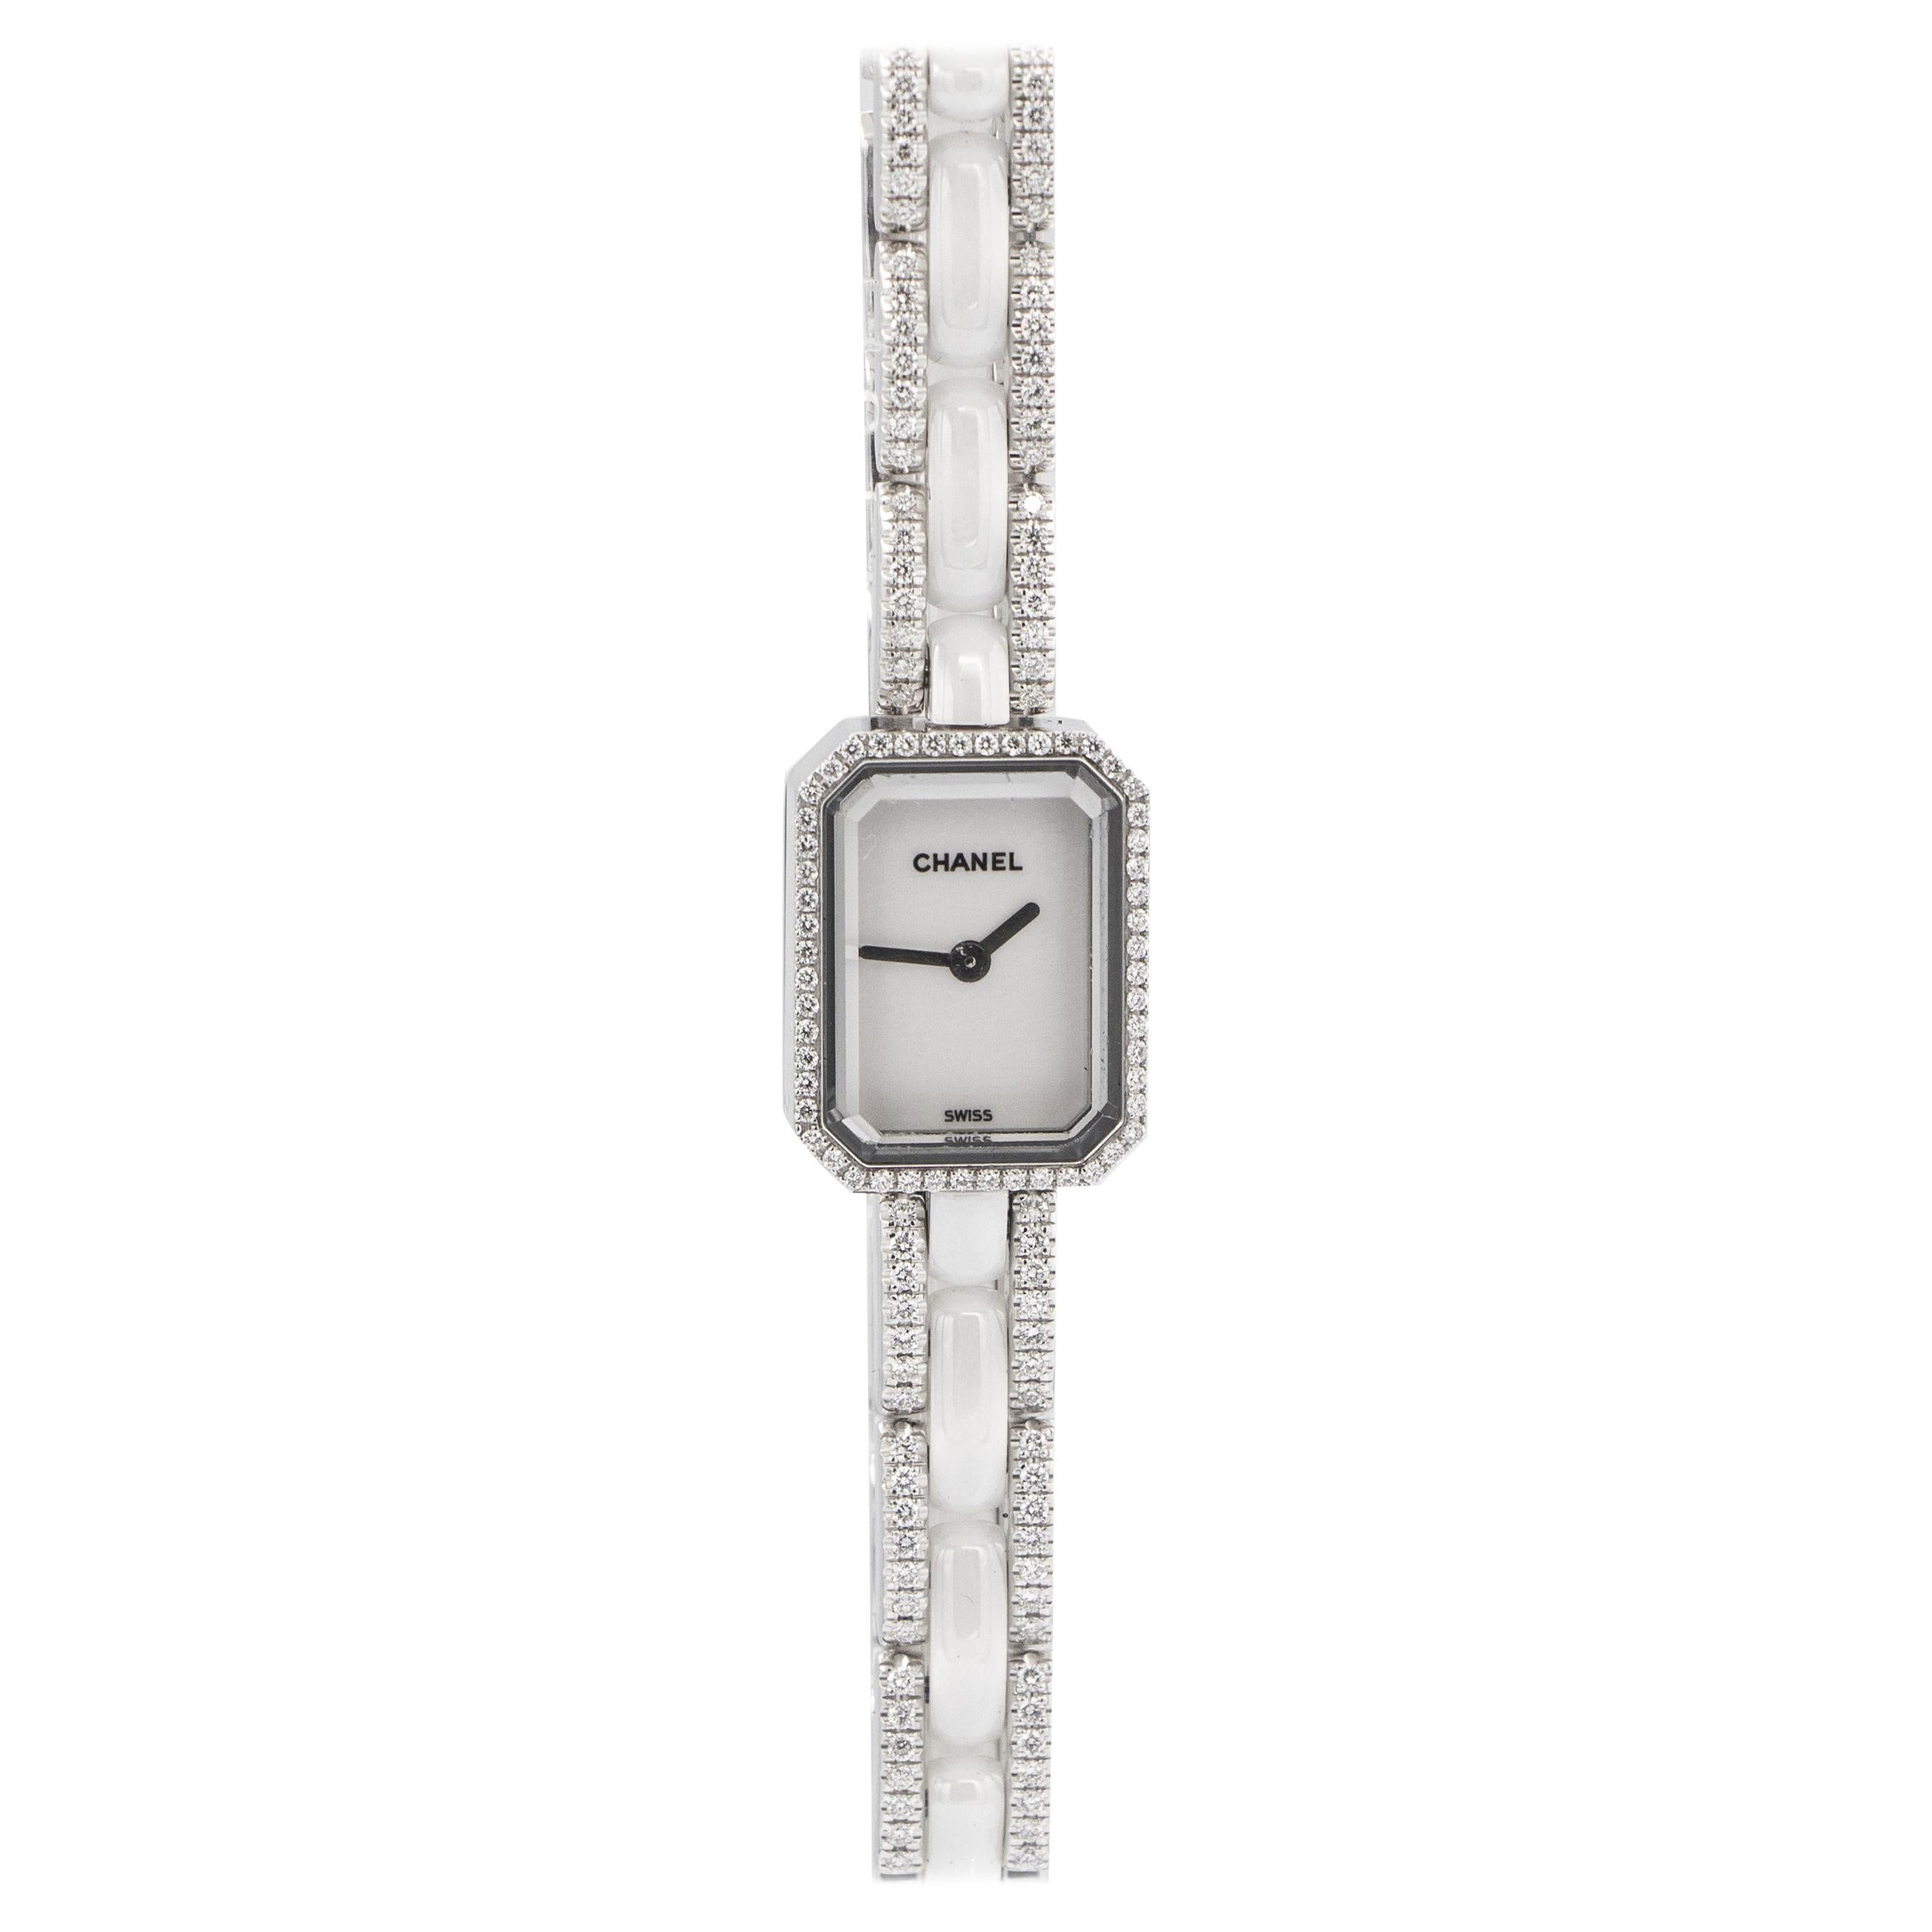 Rare Chanel Premiere Mini White Ceramic Watch With Diamonds 1.49 Carats 18K  Gold